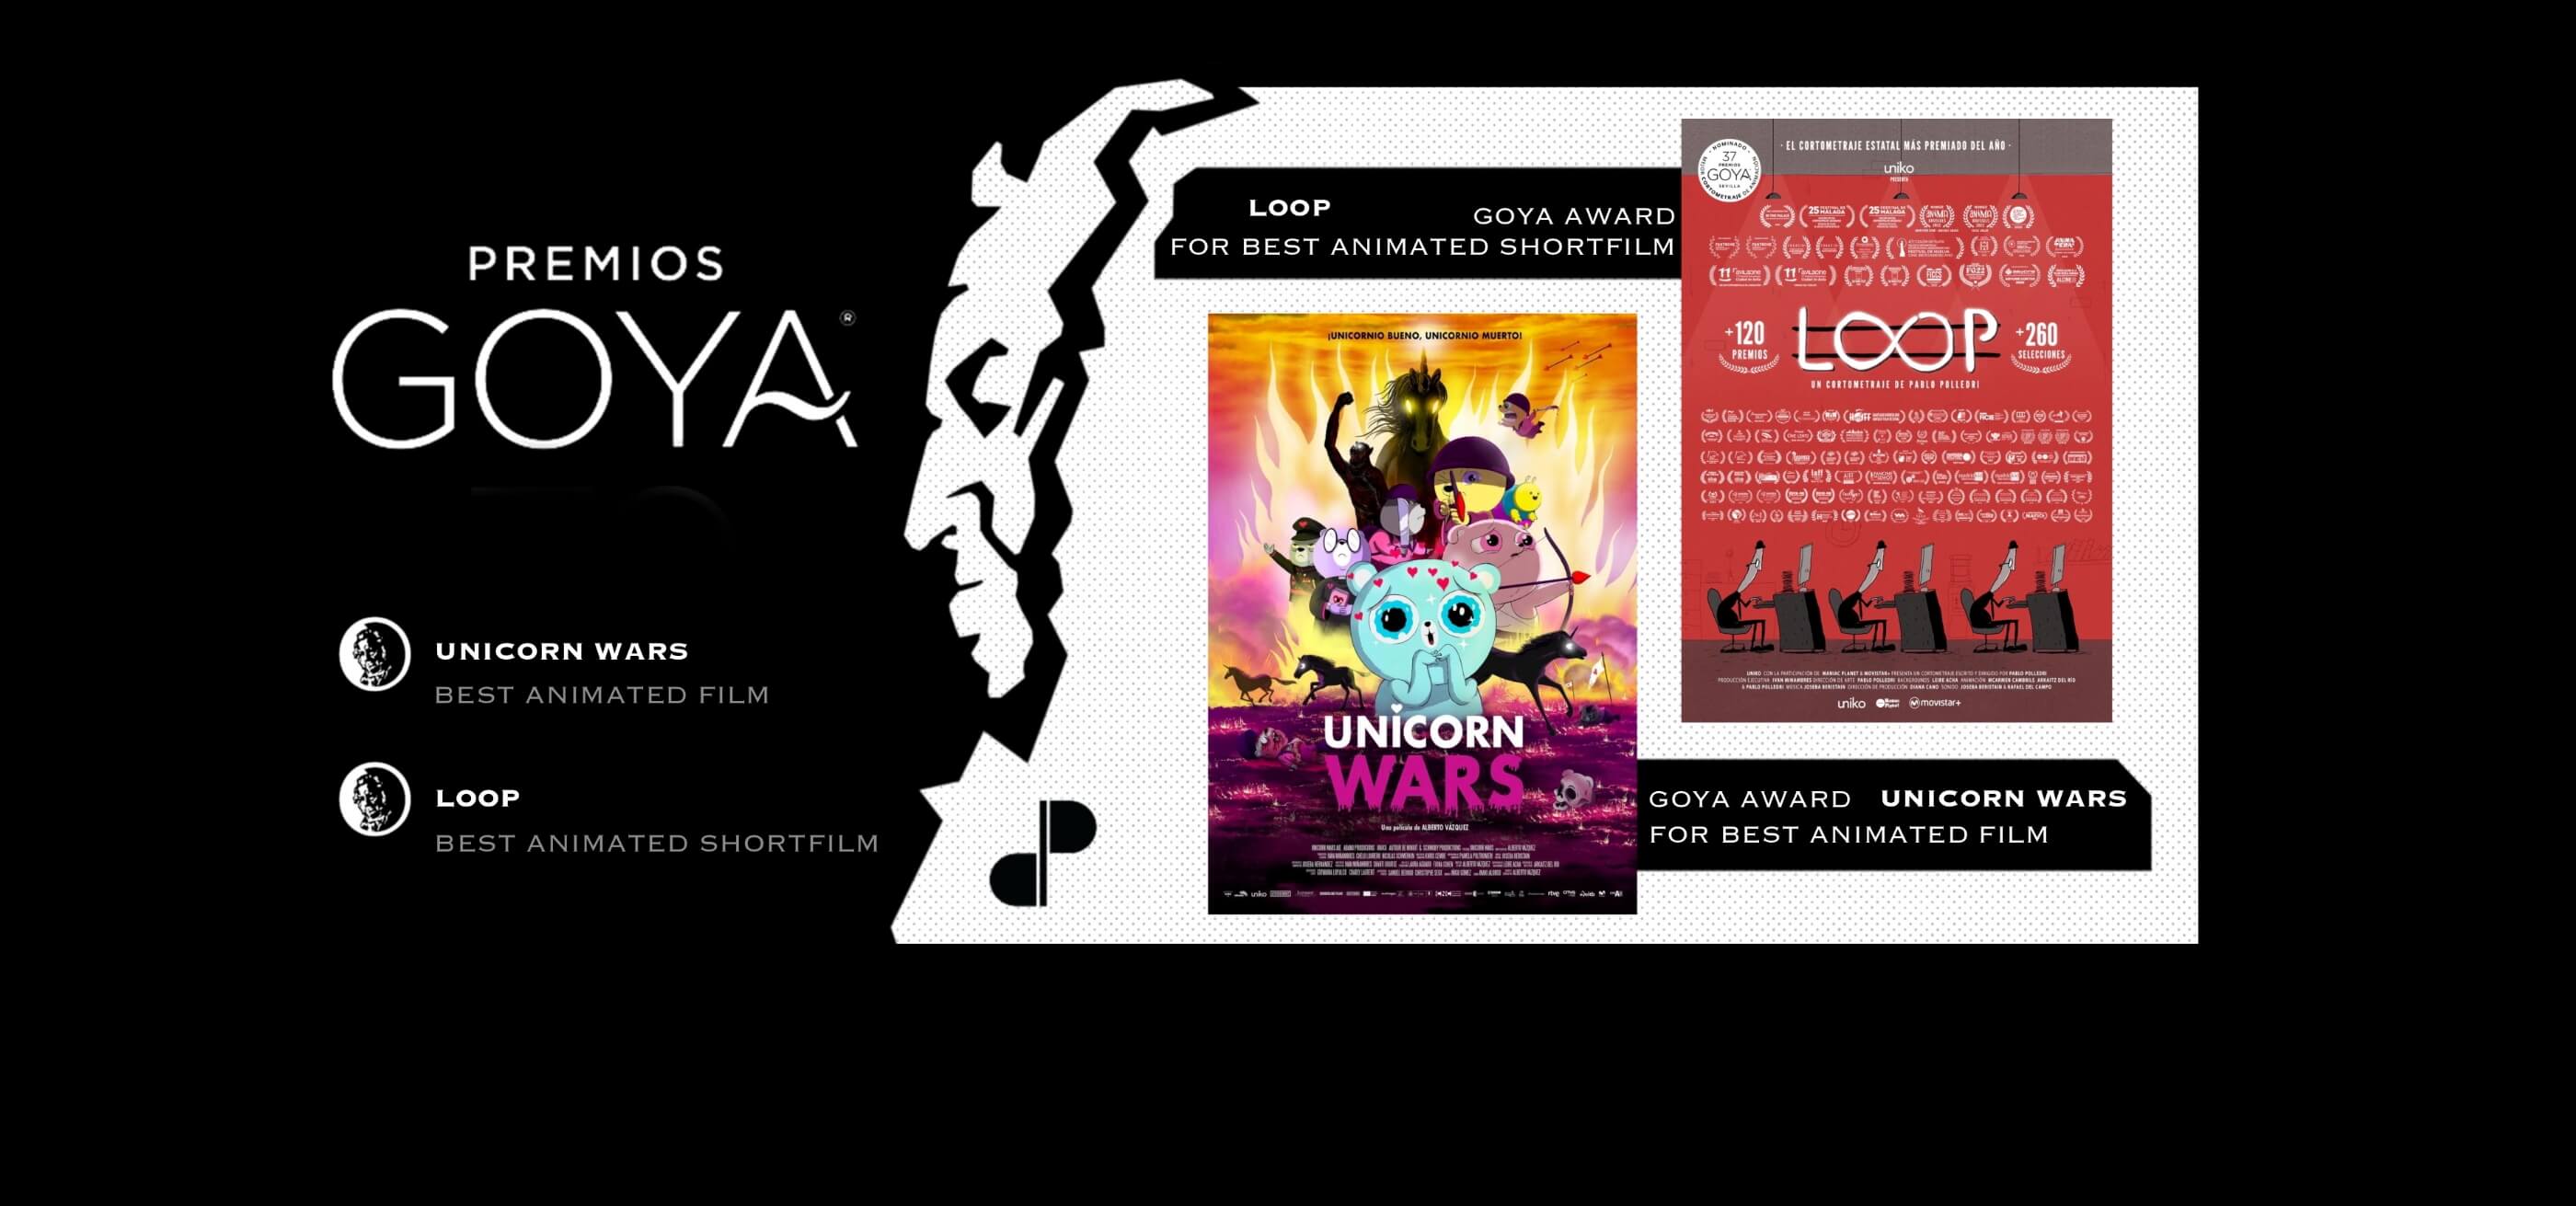 Logotipo de los Premios Goya con los carteles de las animaciones Unicorn Wars y Loop en el lateral.